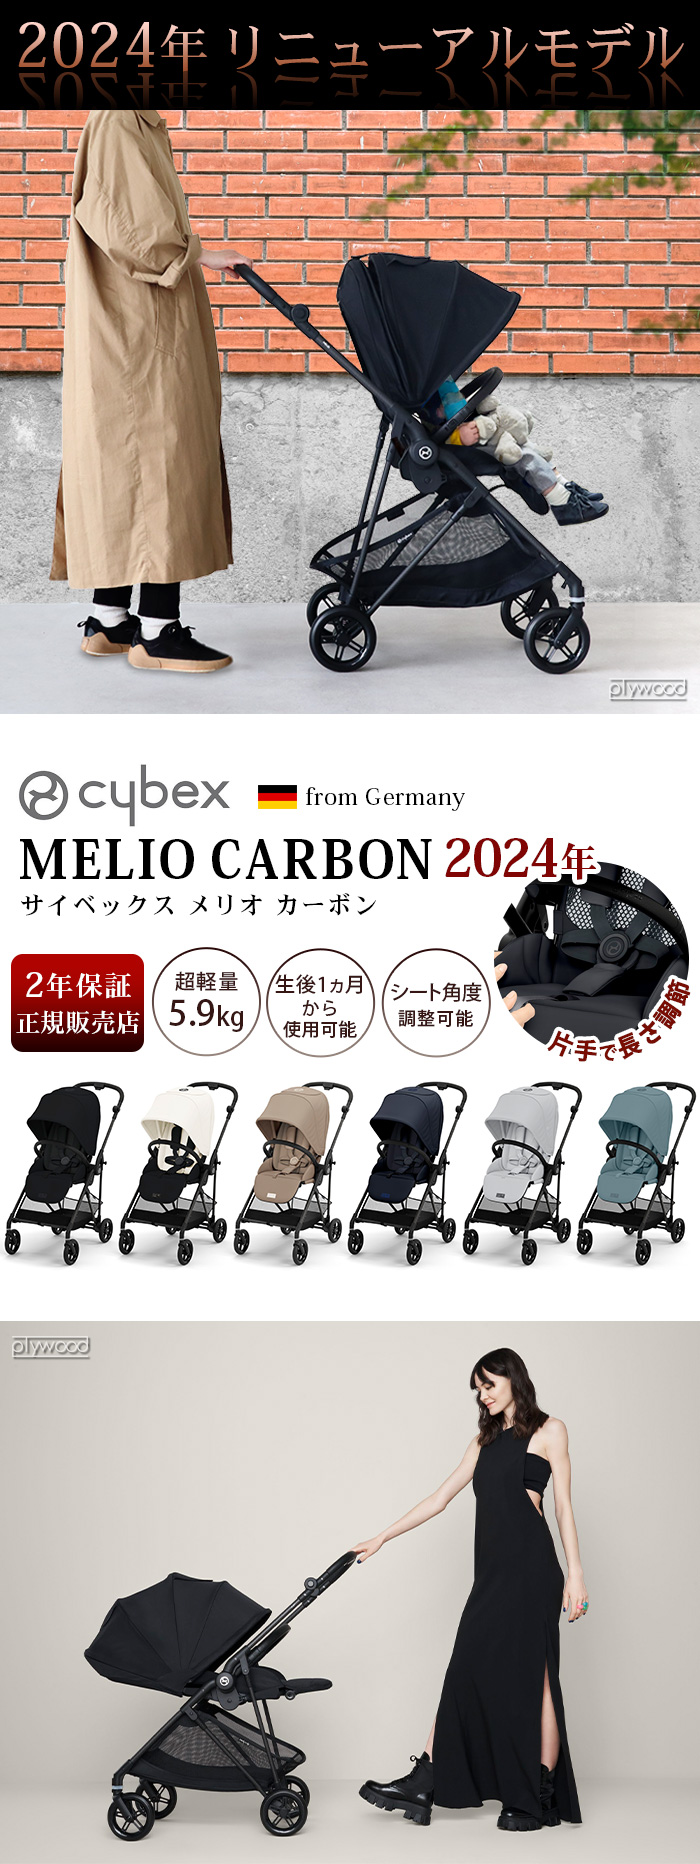 サイベックス メリオ カーボン cybex MELIO CARBON 2024ver.-plywood